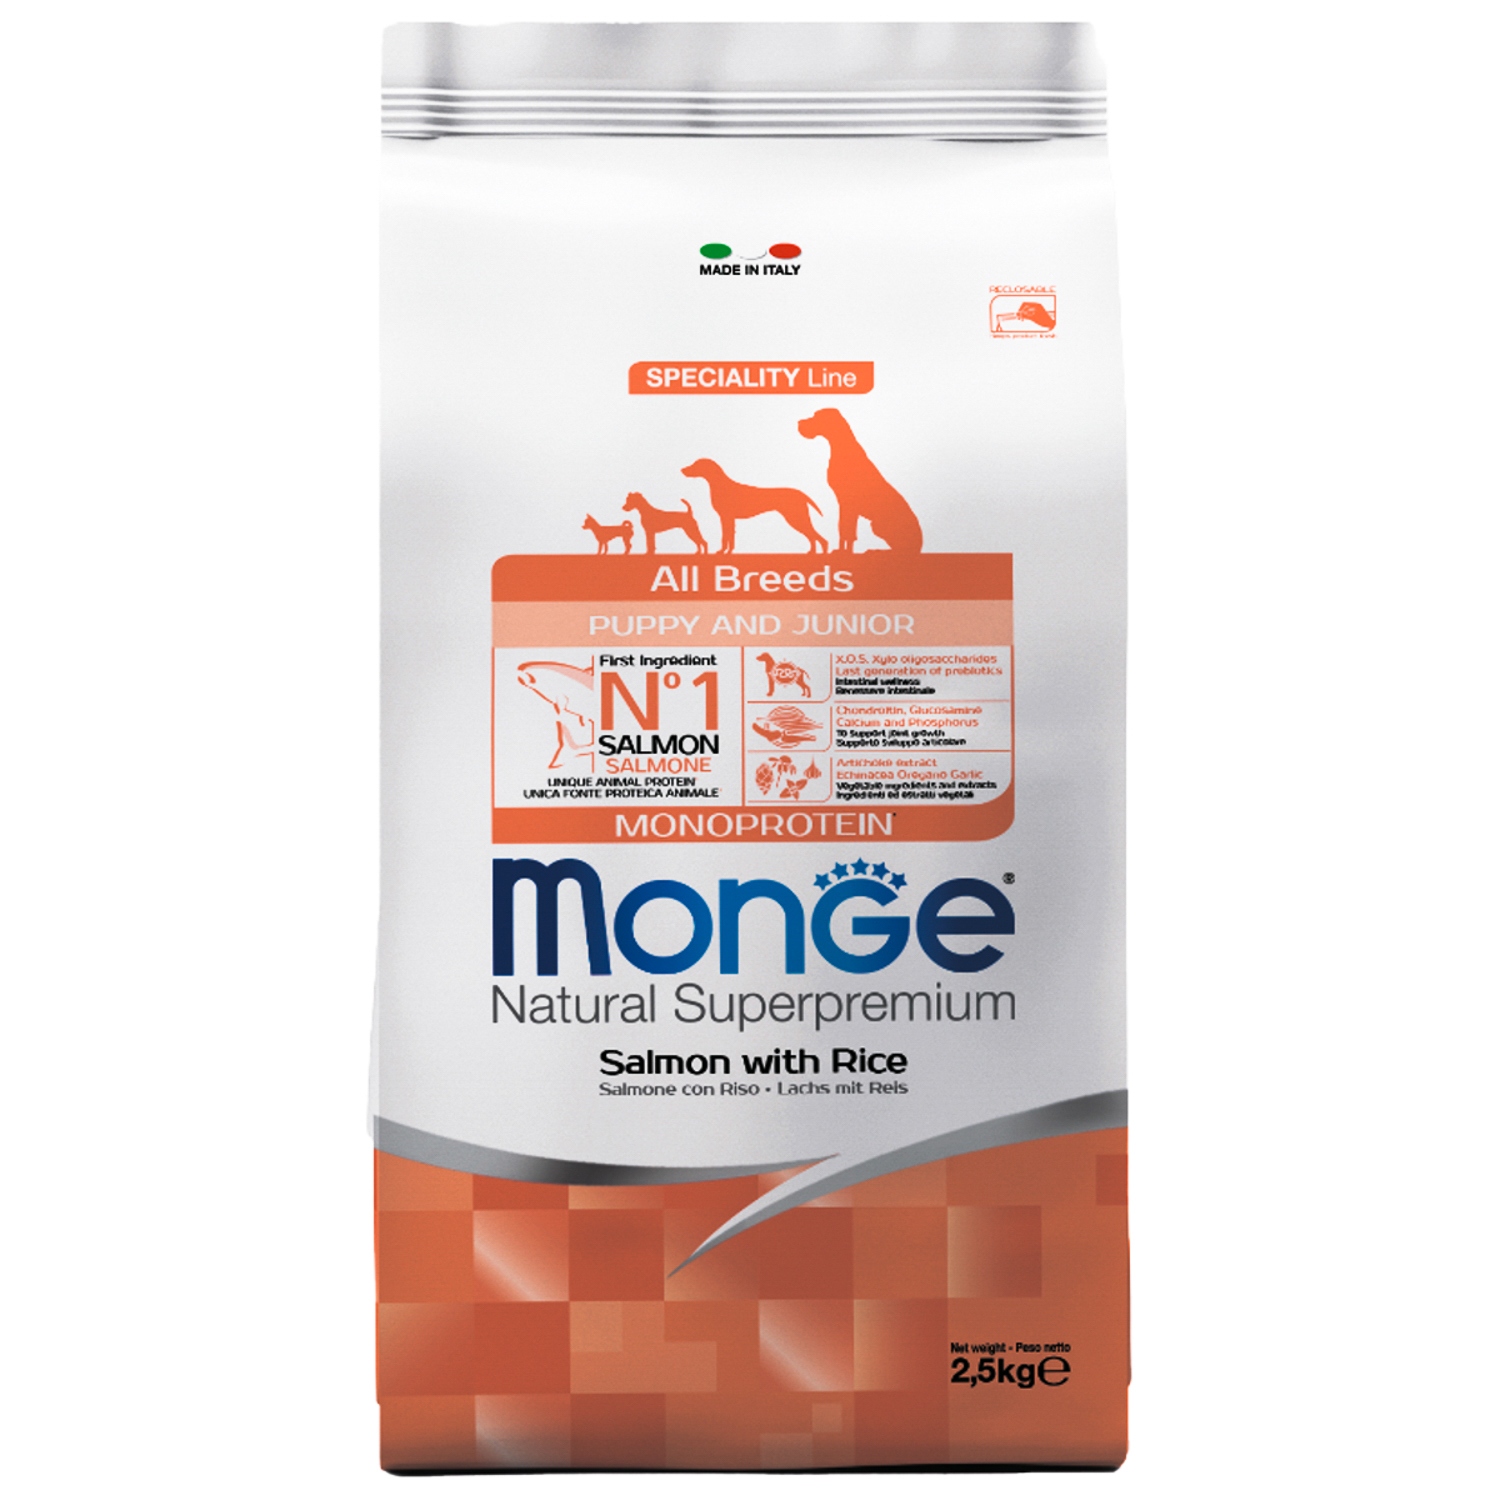 Сухой корм Monge Dog Speciality Line Monoprotein Puppy&Junior корм для щенков всех пород, из лосося с рисом 2,5 кг